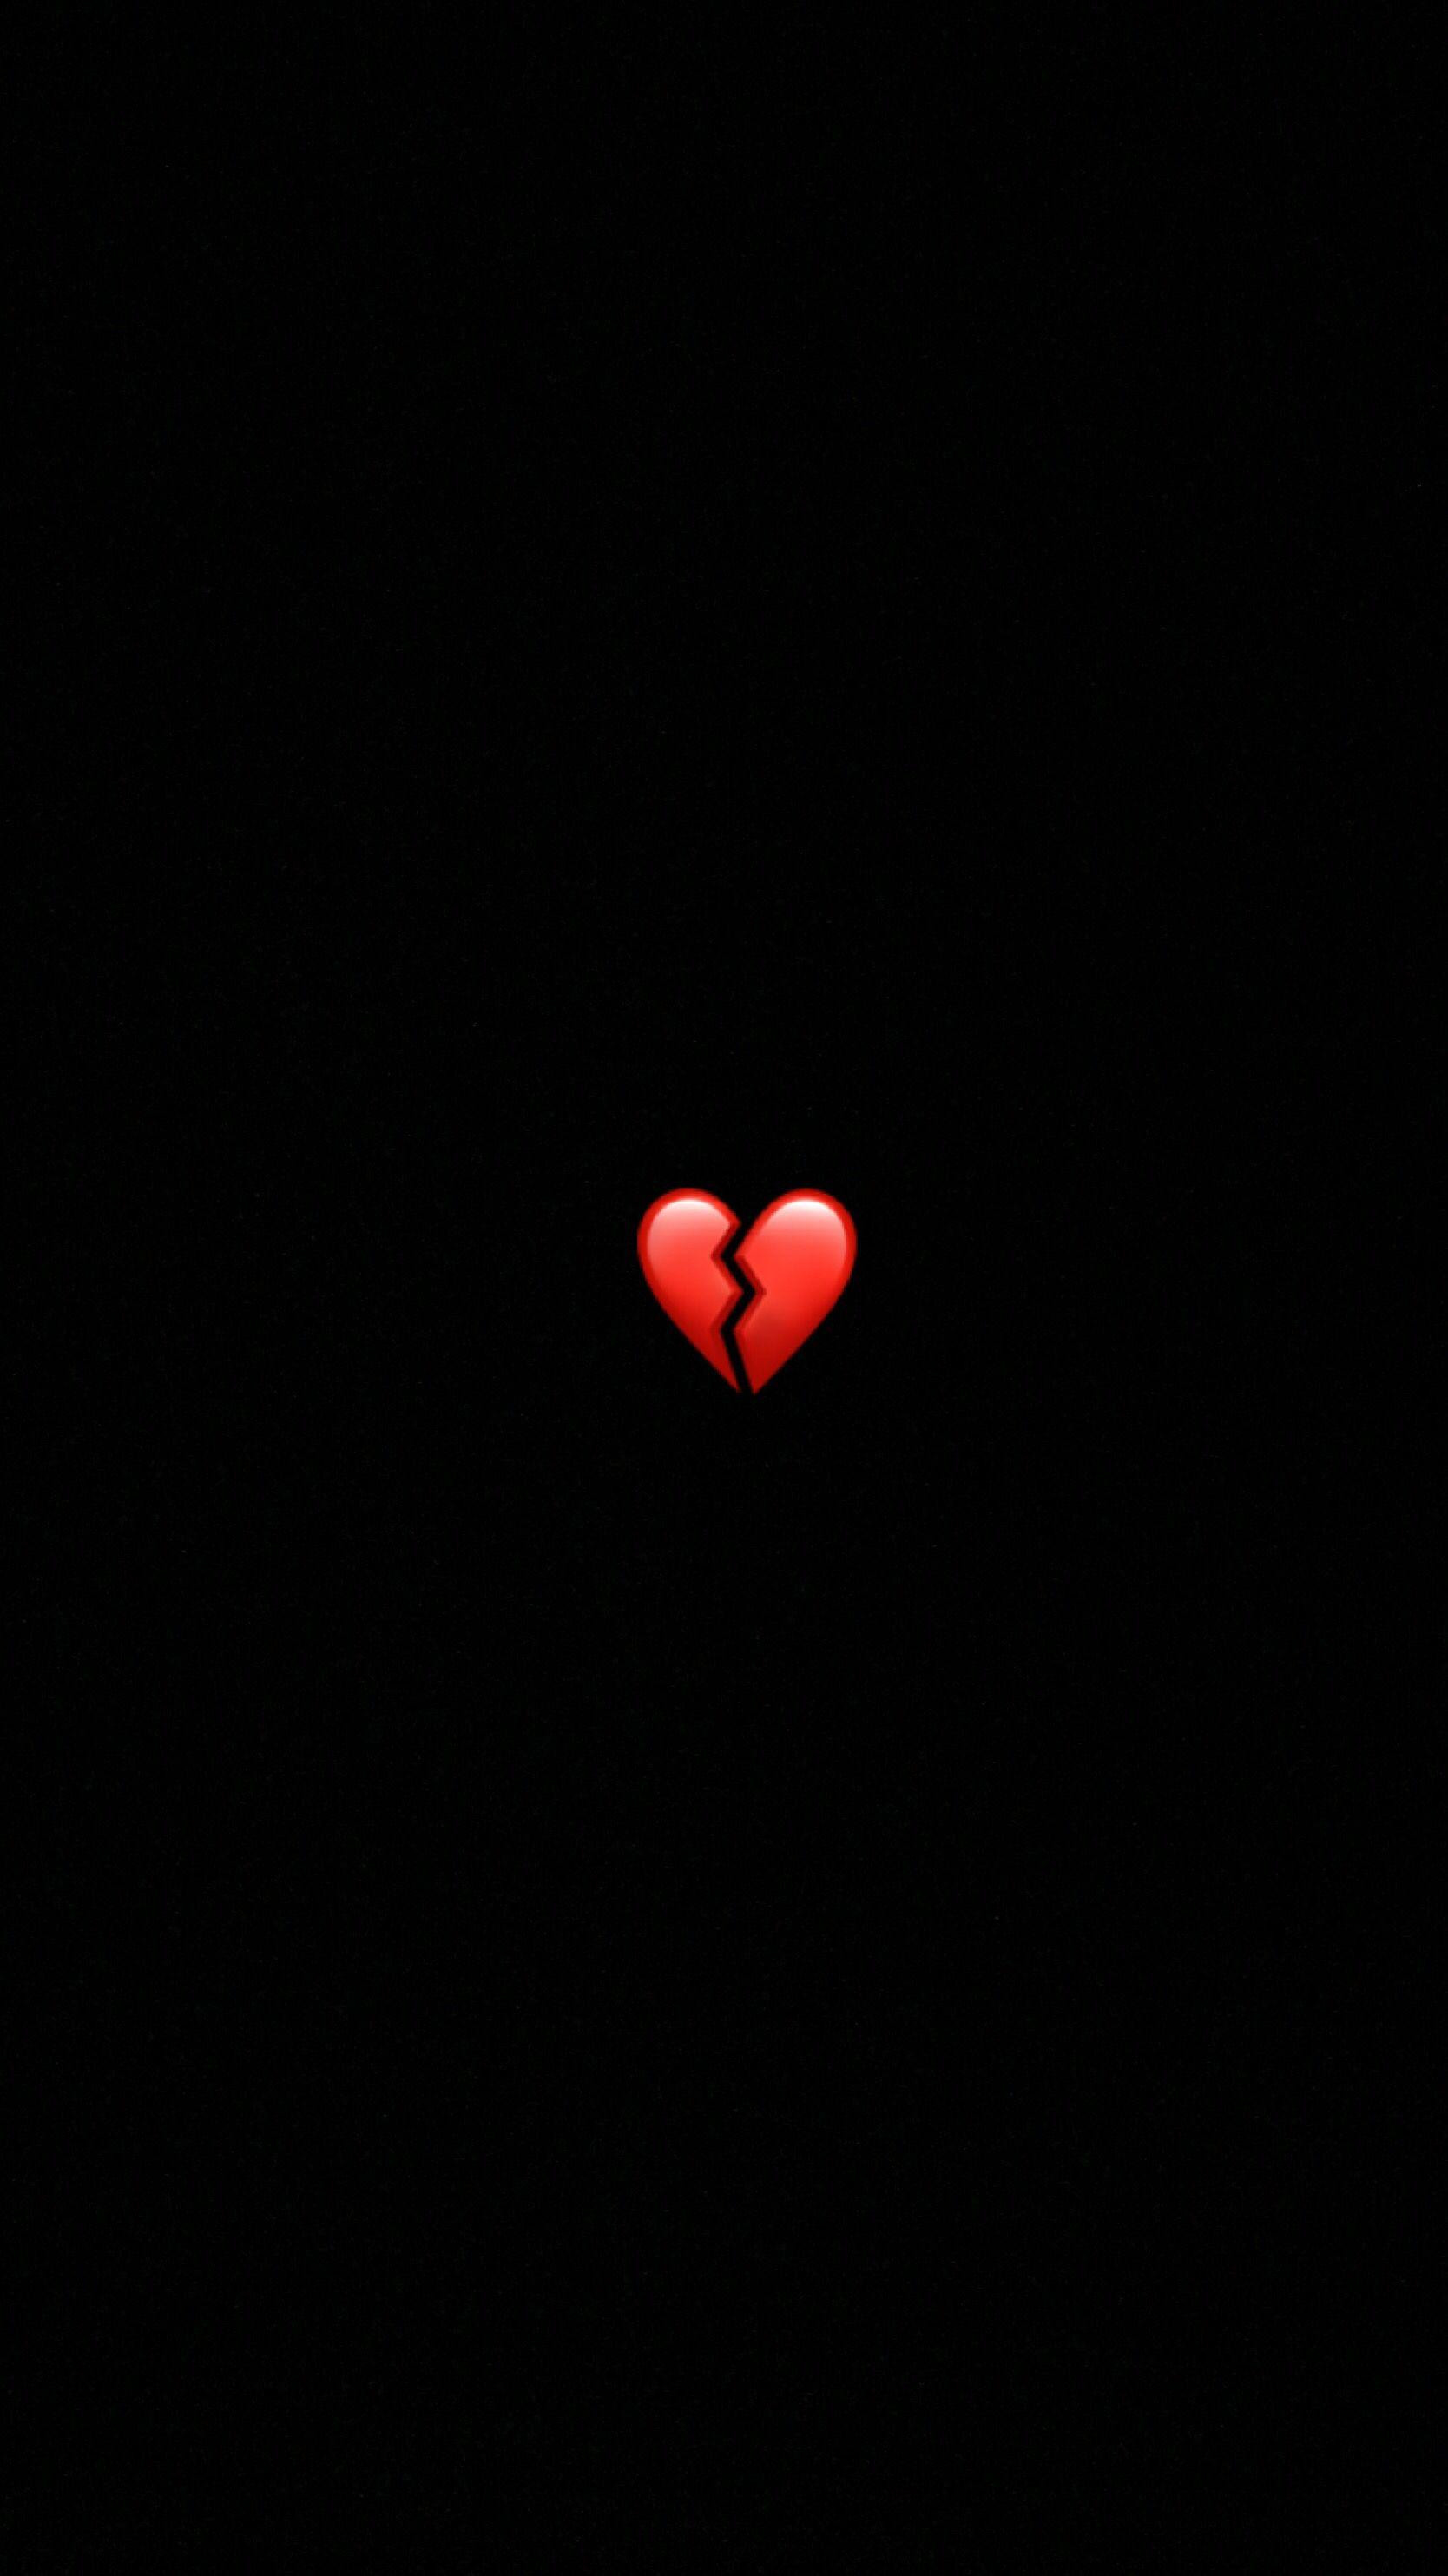 home screen wallpaper. Broken heart wallpaper, Heart wallpaper, Broken heart emoji